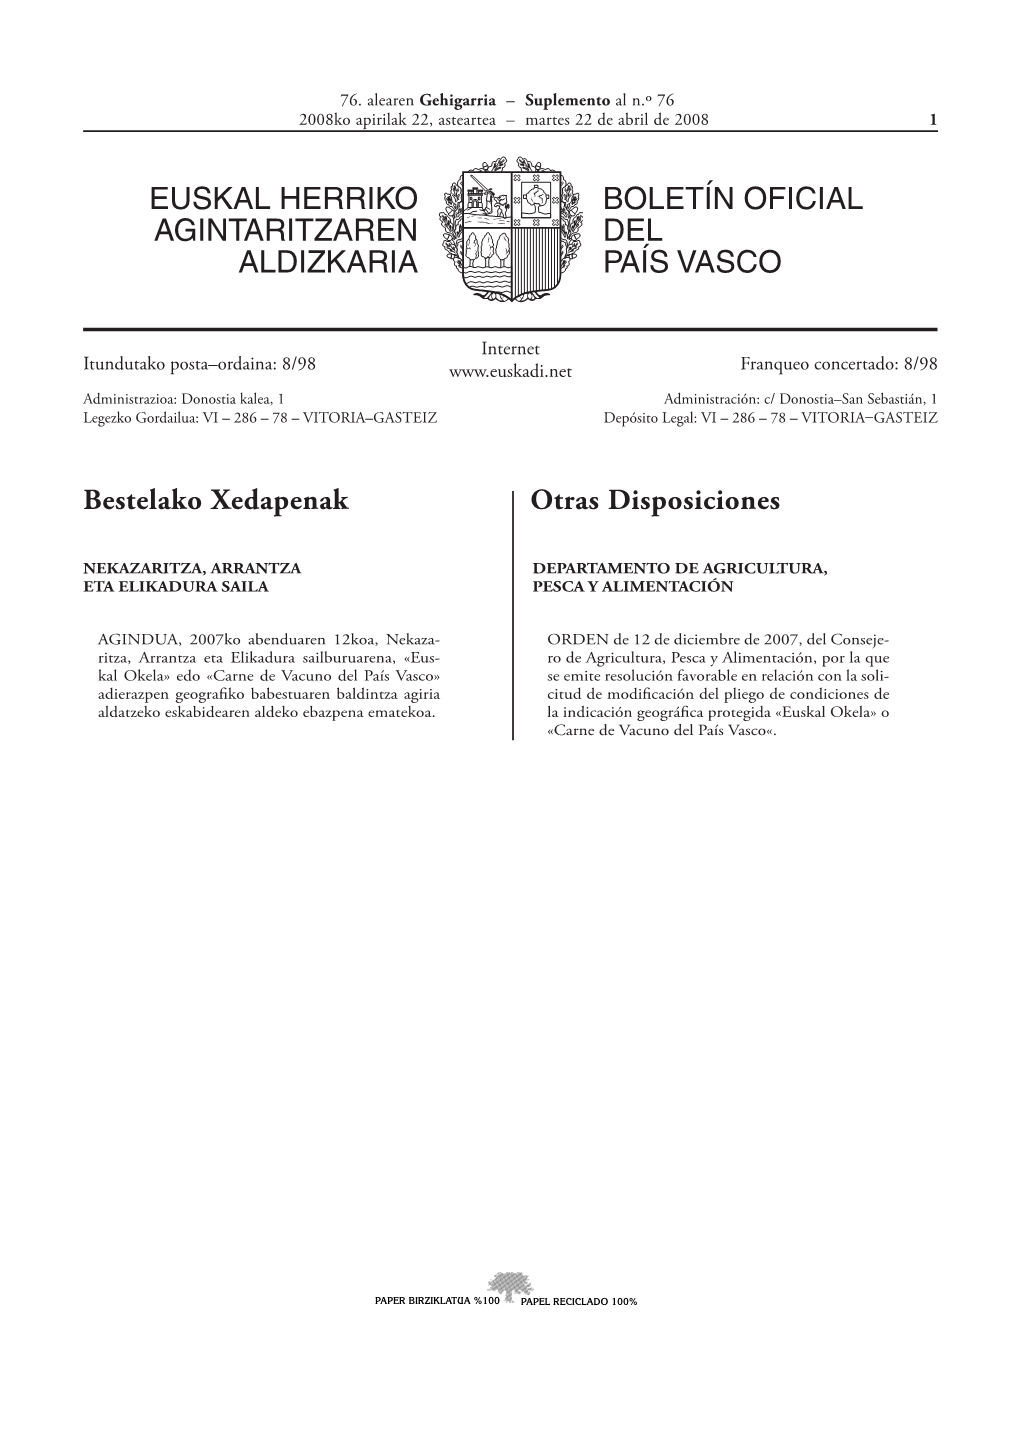 Euskal Herriko Agintaritzaren Aldizkaria Boletín Oficial Del País Vasco